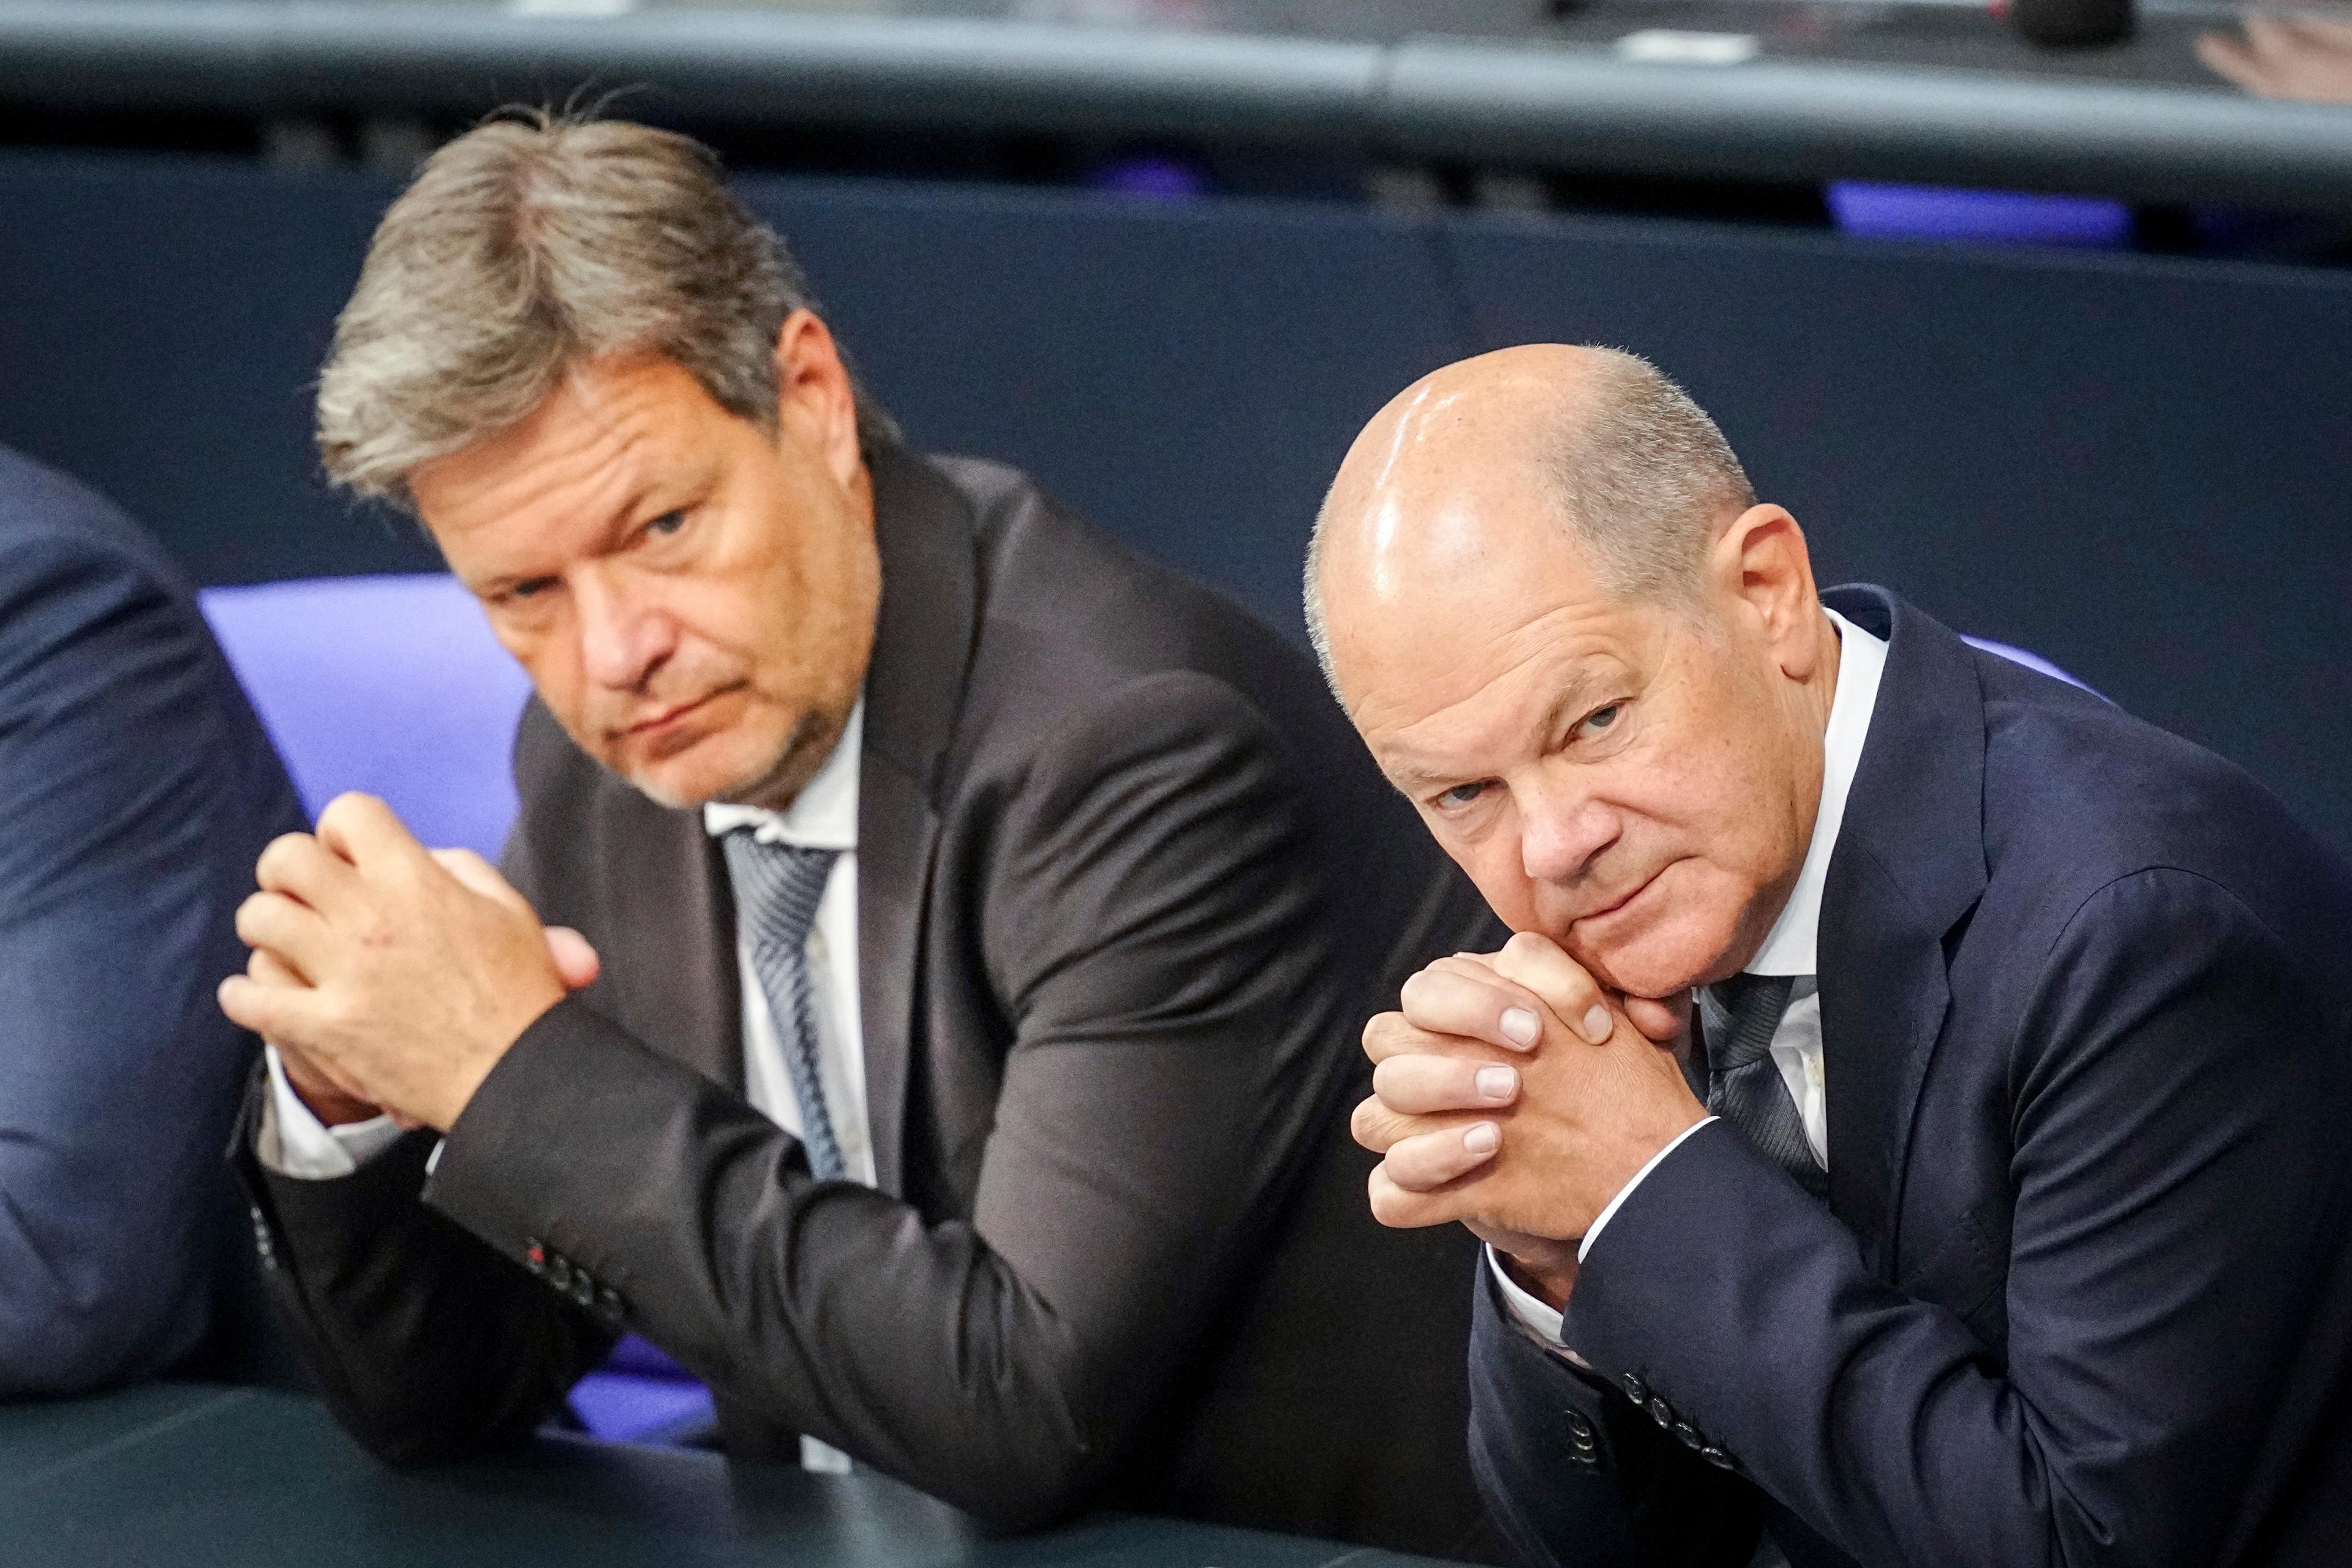 Tysklands vicekansler och klimatminister Robert Habeck till vänster i bild och förbundskansler Olaf Scholz till höger. Bilden togs vid ett sammanträde i förbundsdagen i Berlin på torsdagen. Foto: Kay Nietfeld/DPA via AP/TT